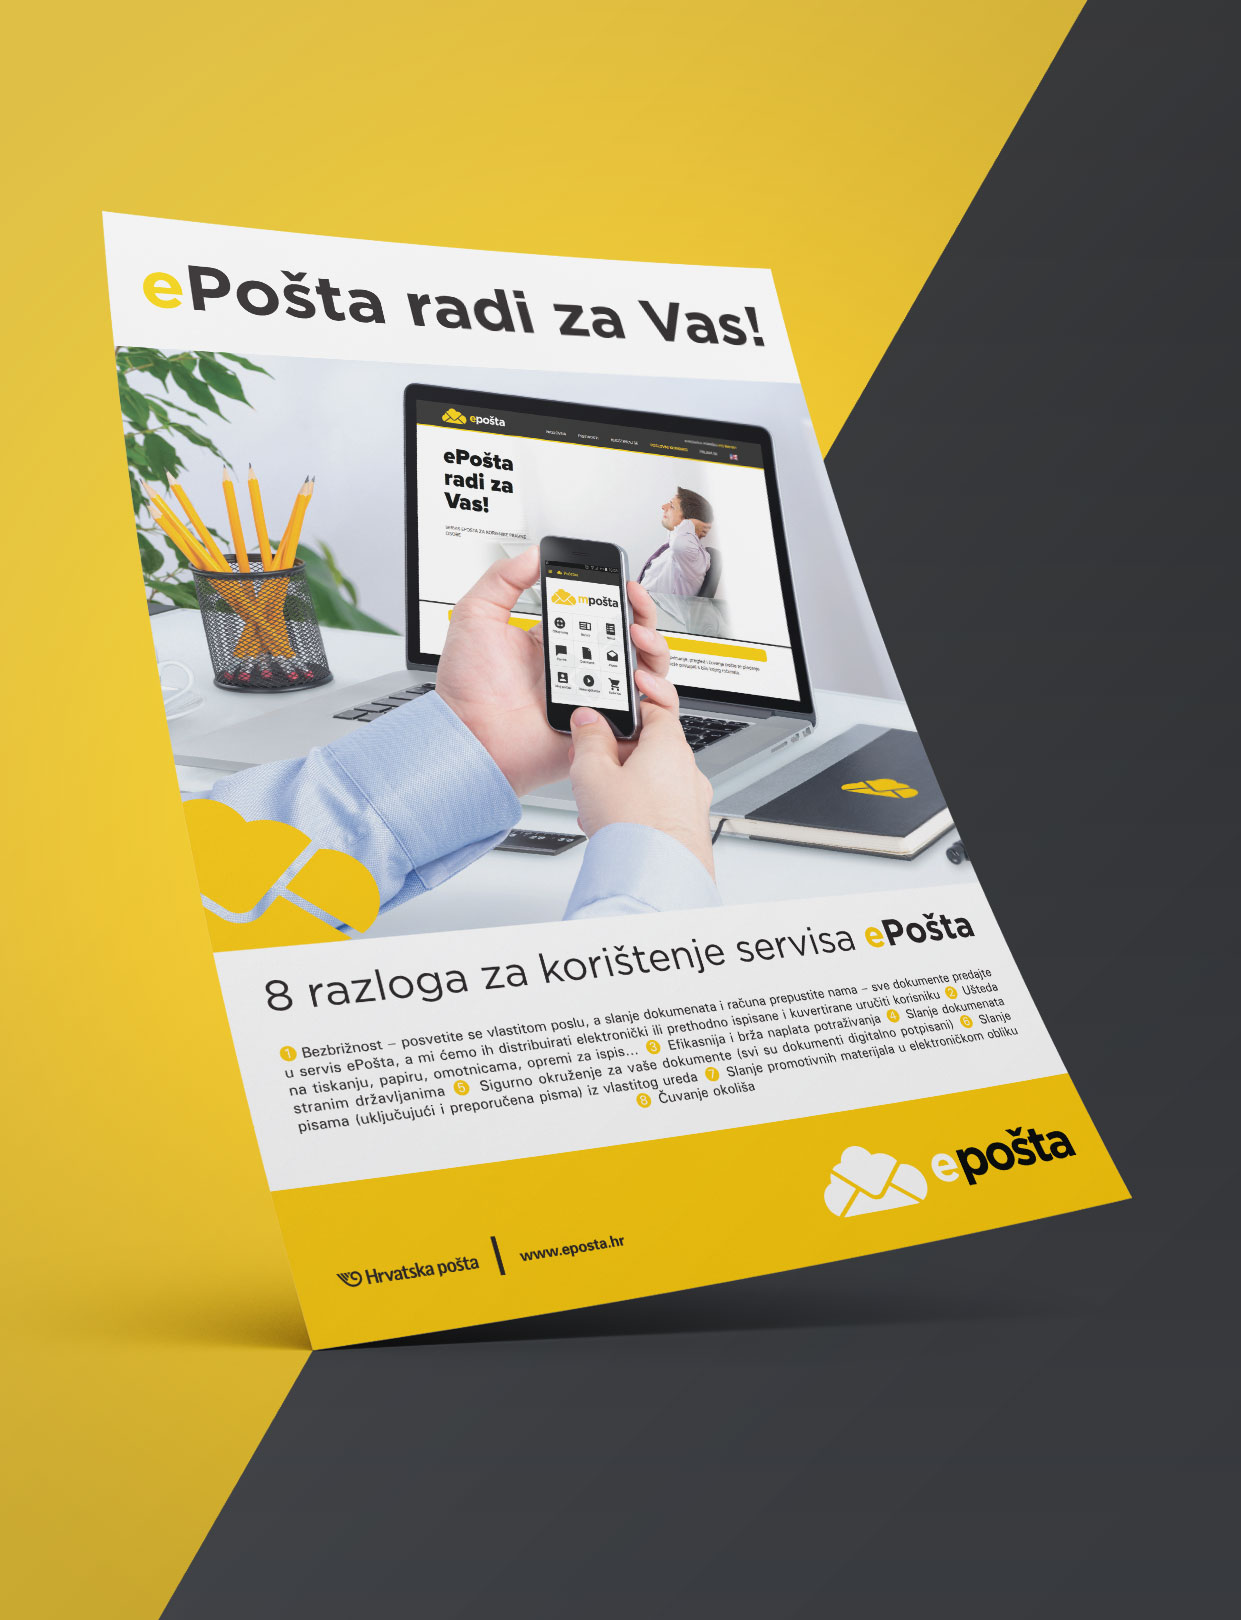 Dizajn oglasa za kampanju "ePošta radi za Vas" za Hrvatsku poštu. Na slici vidimo oglas koji se nalazi na žuto/tamnosivoj podlozi. Na oglasu vidimo korisnika koji u rukama drži mobilni uređaj sa upaljenom aplikacijom Hrvatske pošte kao i na monitoru laptopa koji se nalazi na radnom stolu ispred korisnika.